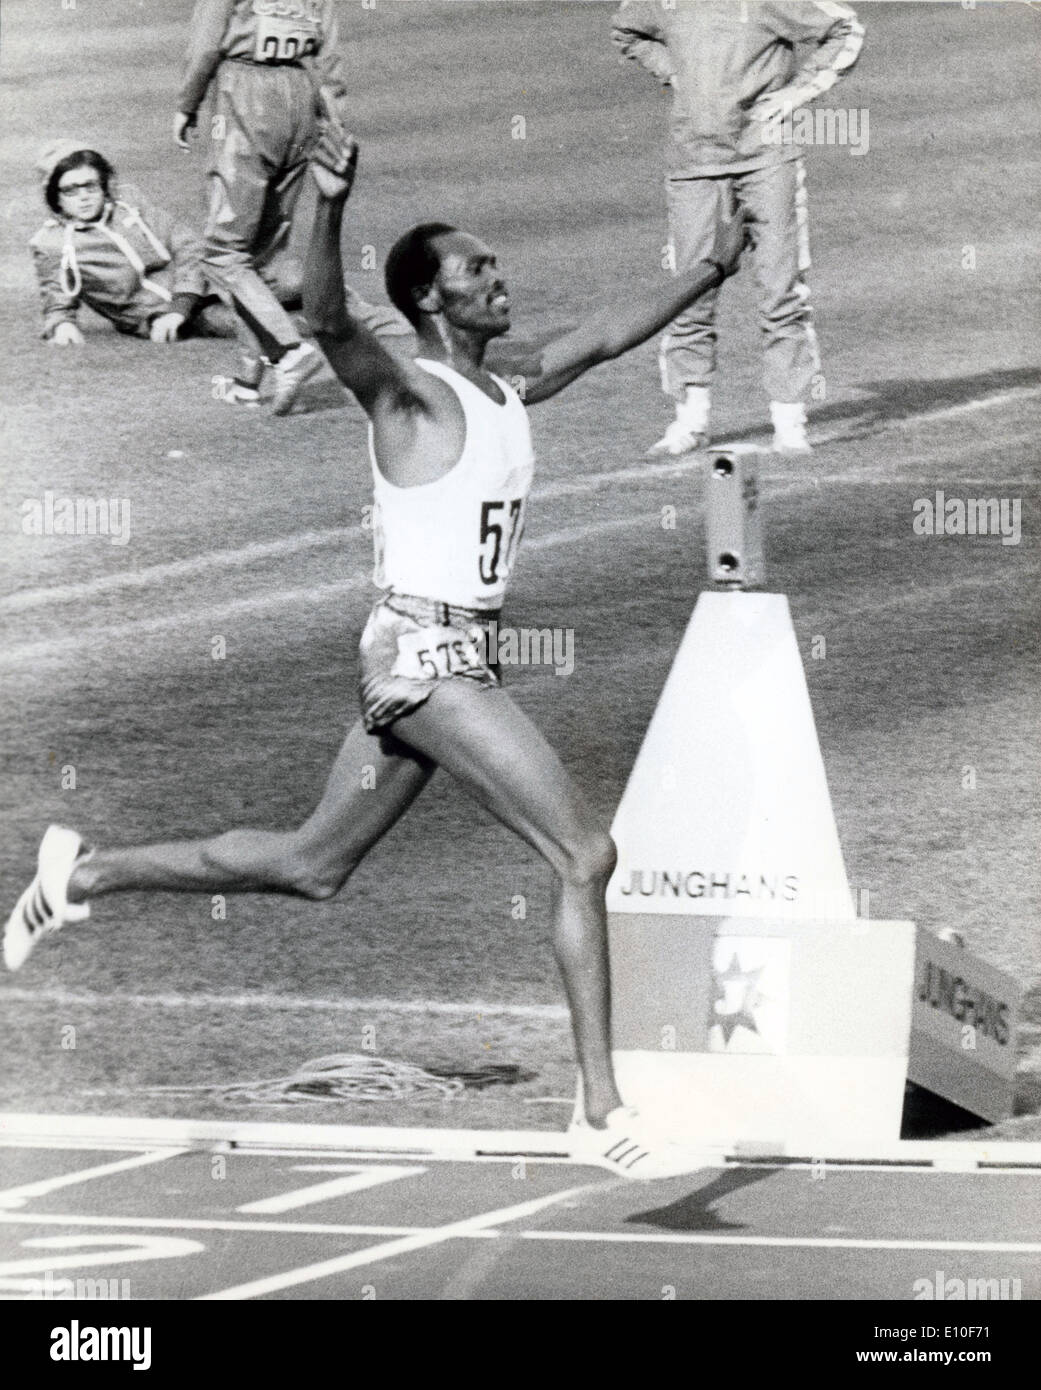 Sett. 7, 1972 - Monaco di Baviera, Germania - corridore keniota KIP KEINO vince i 3 mila metri di siepi finali durante il 1972 Monaco di Baviera Giochi Olimpici. Foto Stock